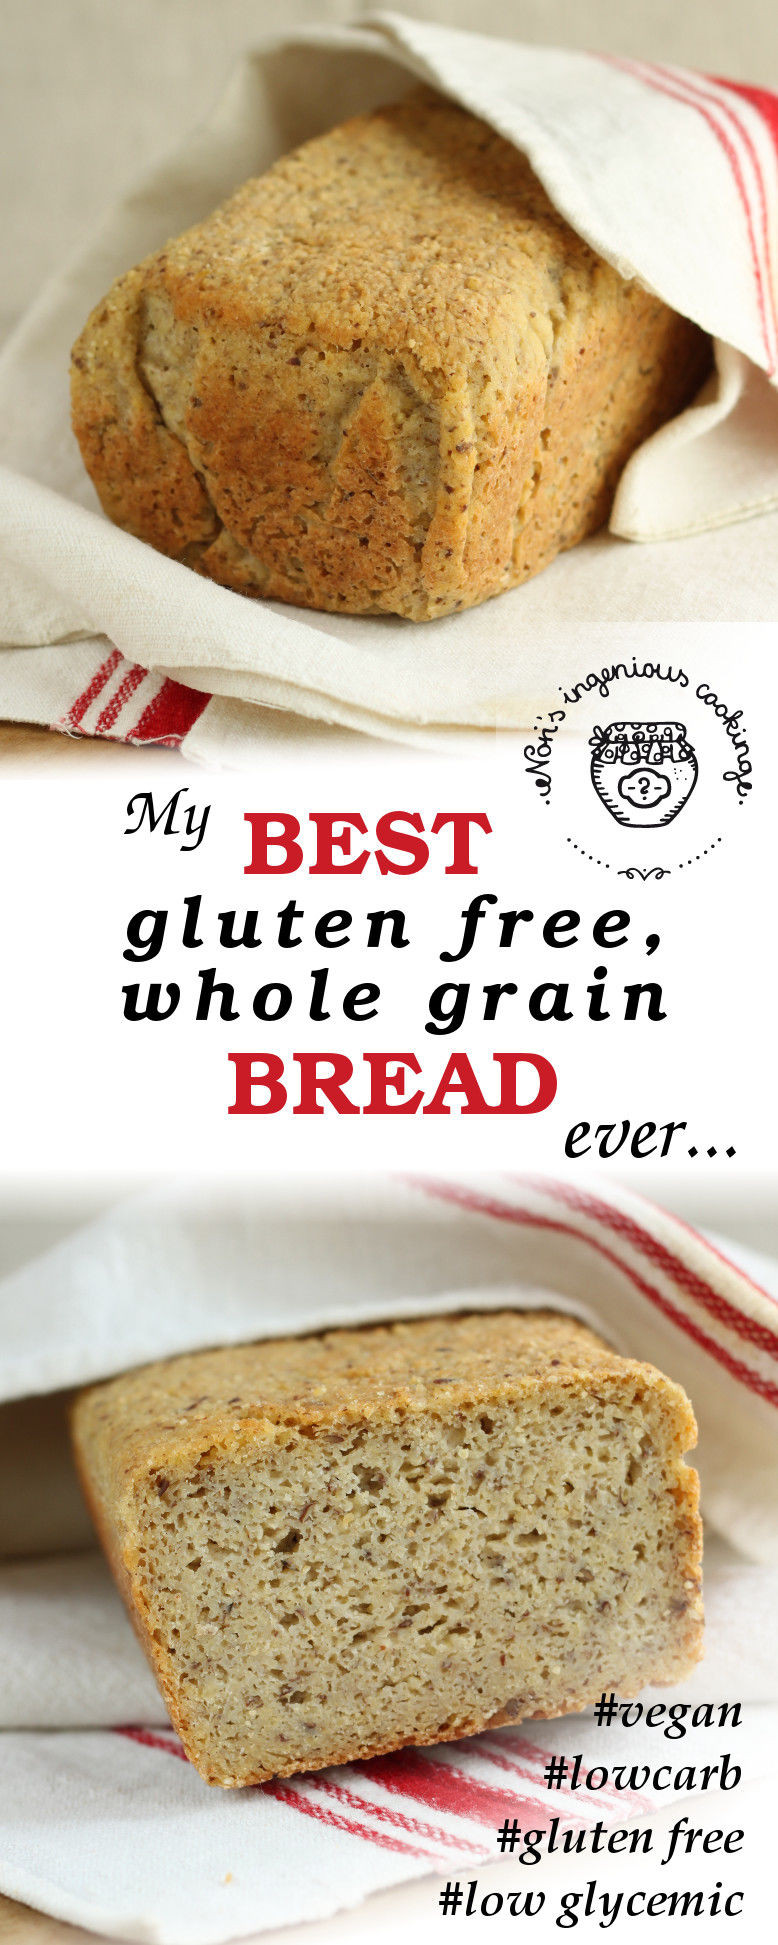 Best Gluten Free Bread Recipes
 My best gluten free whole grain bread ever vegan